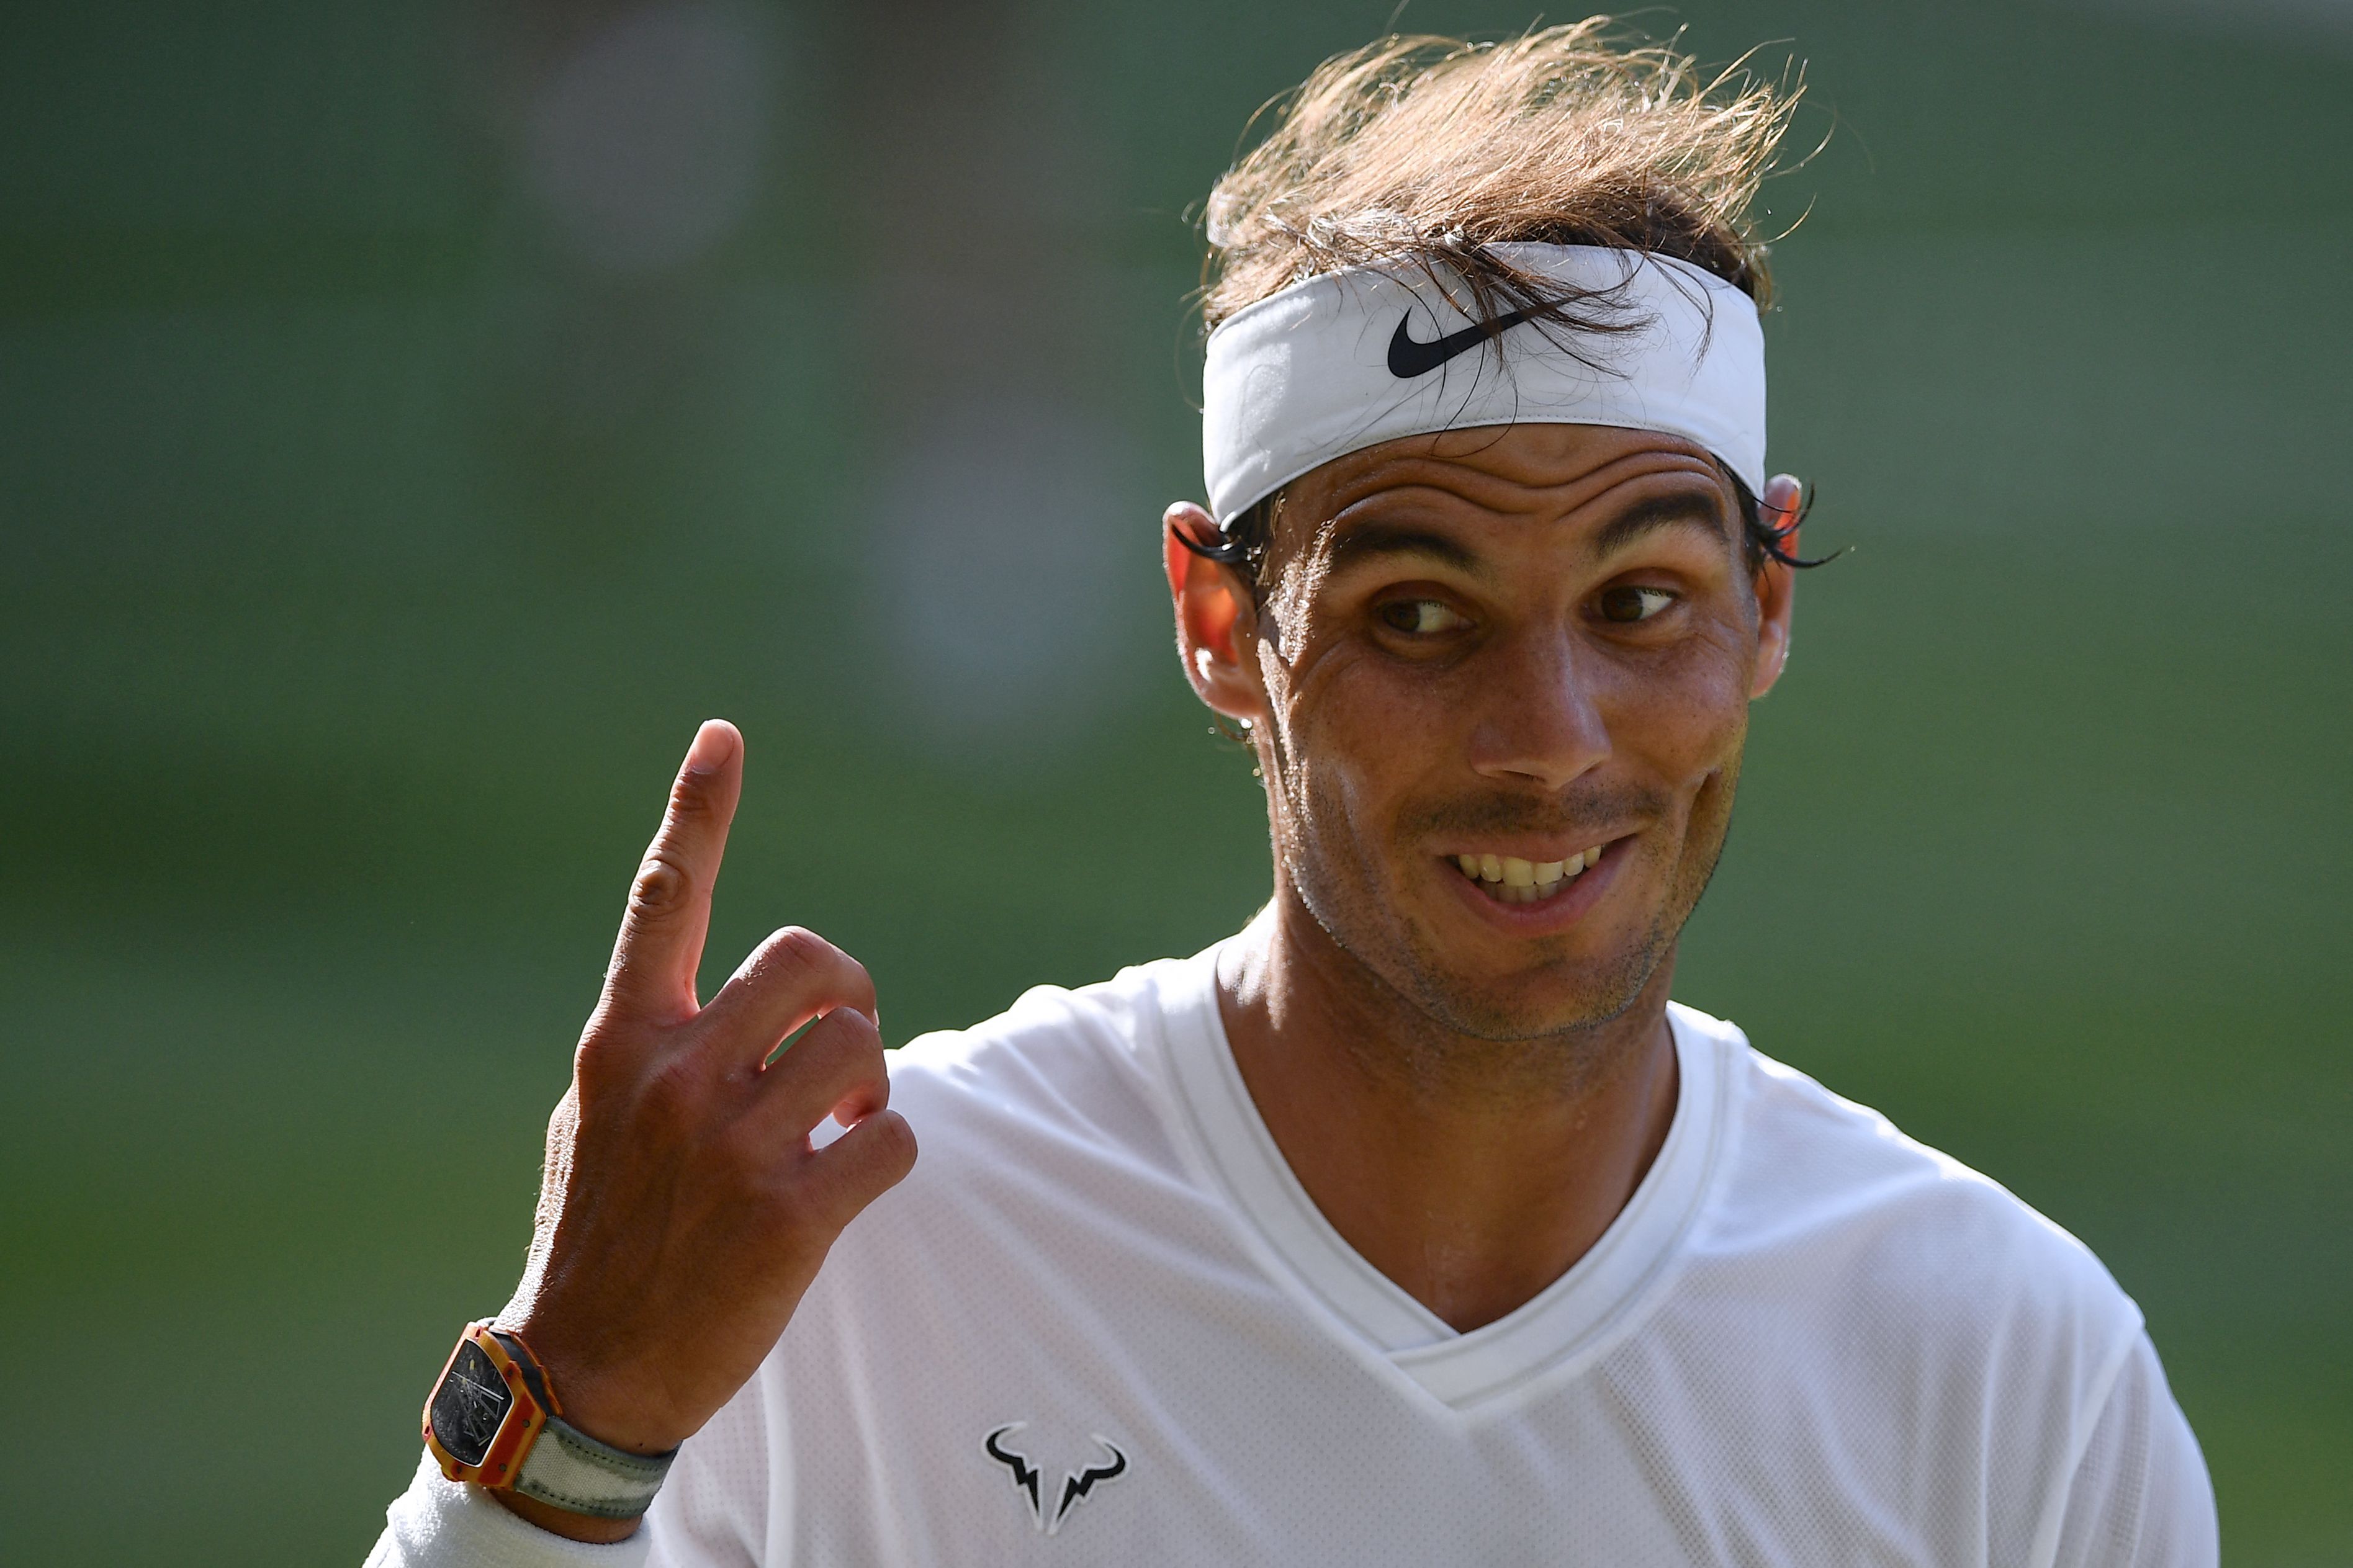 El tenista español no jugará Wimbledon, según confirmó este jueves 17 de junio. (Foto Prensa Libre: AFP).